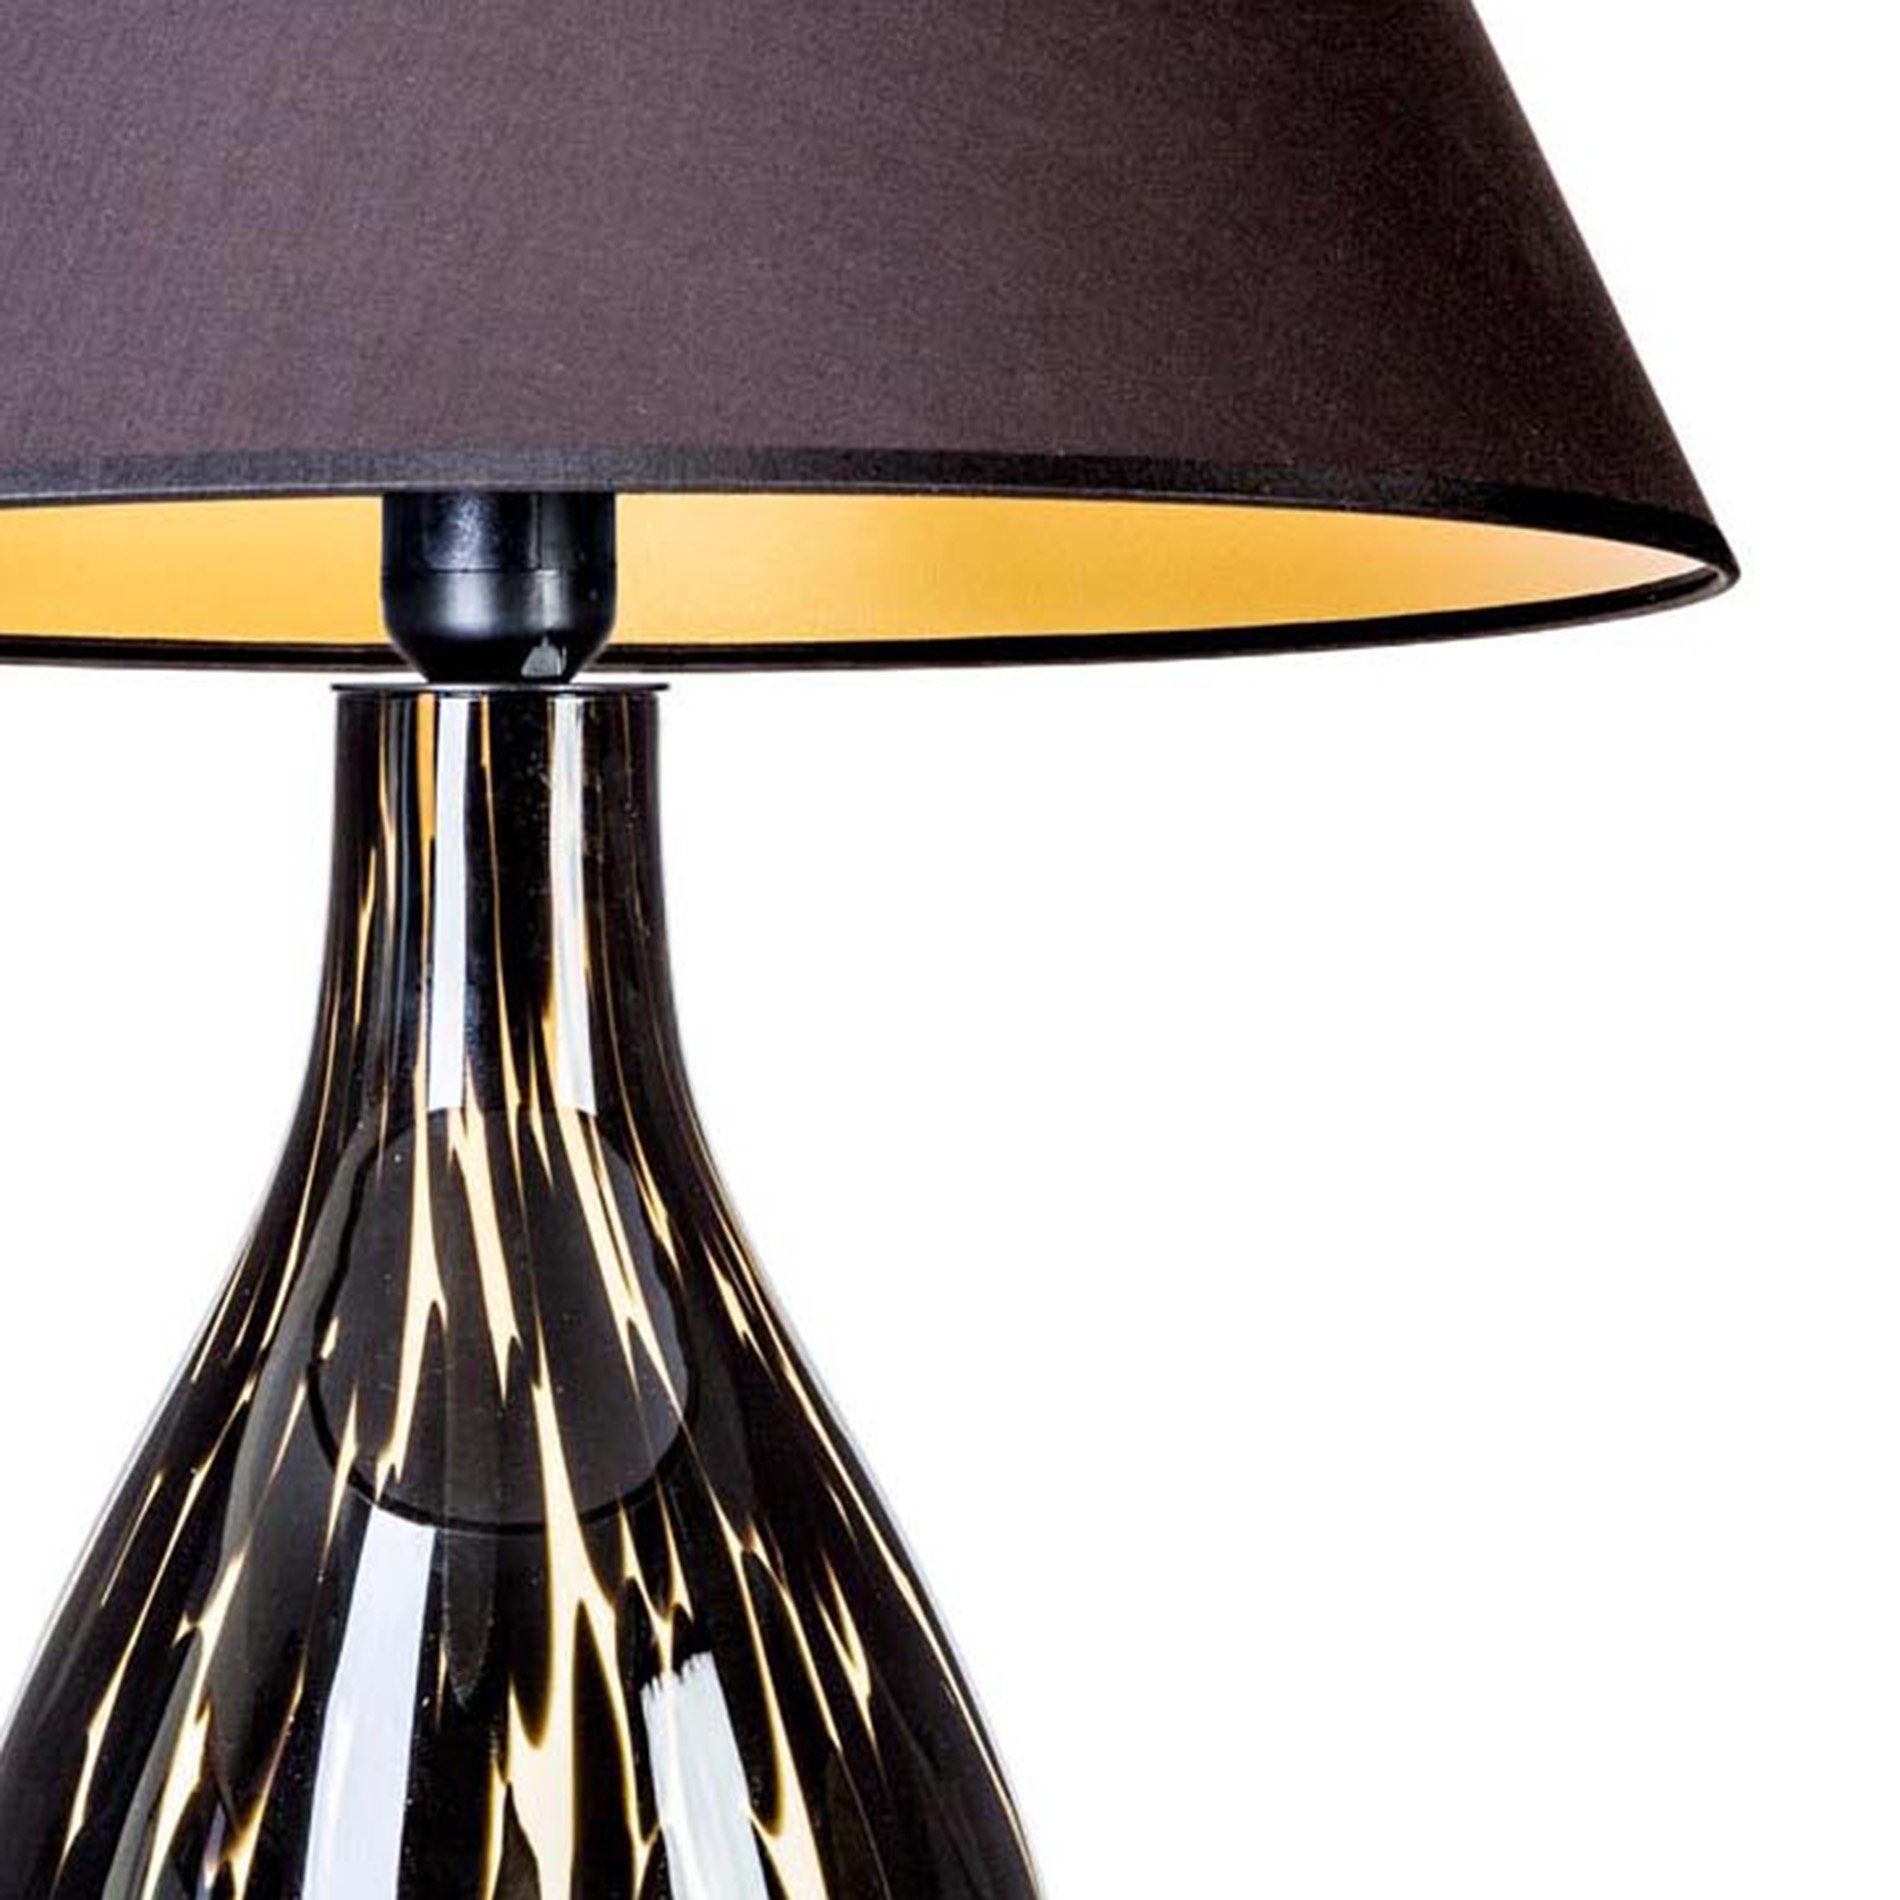 Signature Home Collection Tischleuchte Tischlampe mundgeblasen aus warmweiß, Tischleuchte Lampenschirm gefleckt Stoff mit ohne Leuchtmittel, braun Glas Glas schwarz